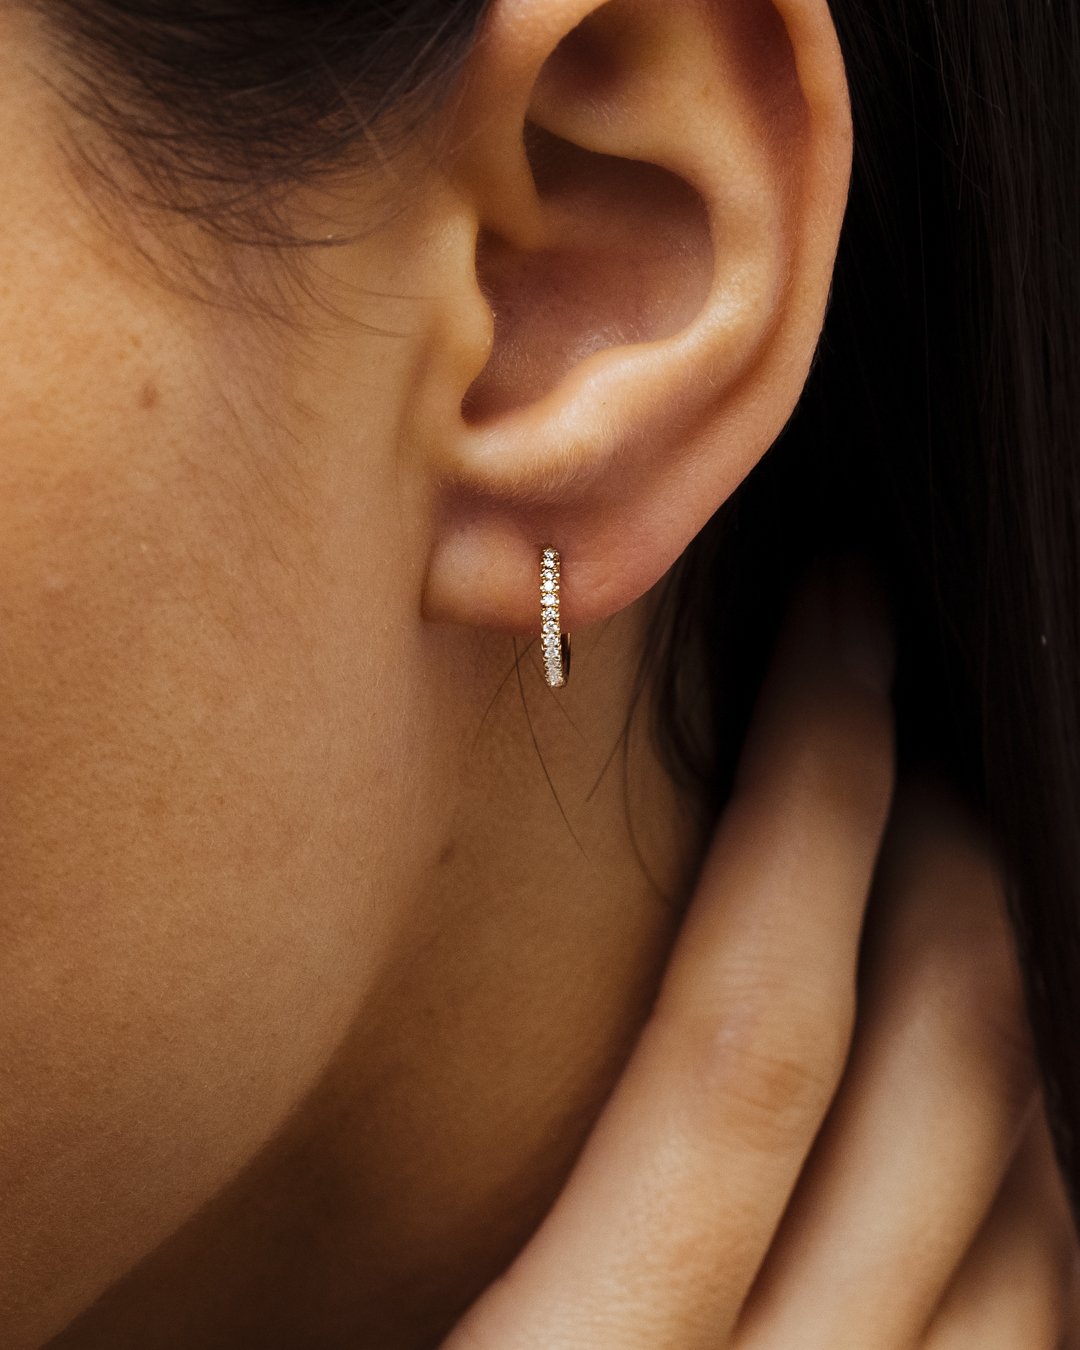 Boucles d'oreilles diamants sur mesure et à prix juste, 5 rue de l'Echelle  Paris 1er, Boucles d'oreilles Subtile